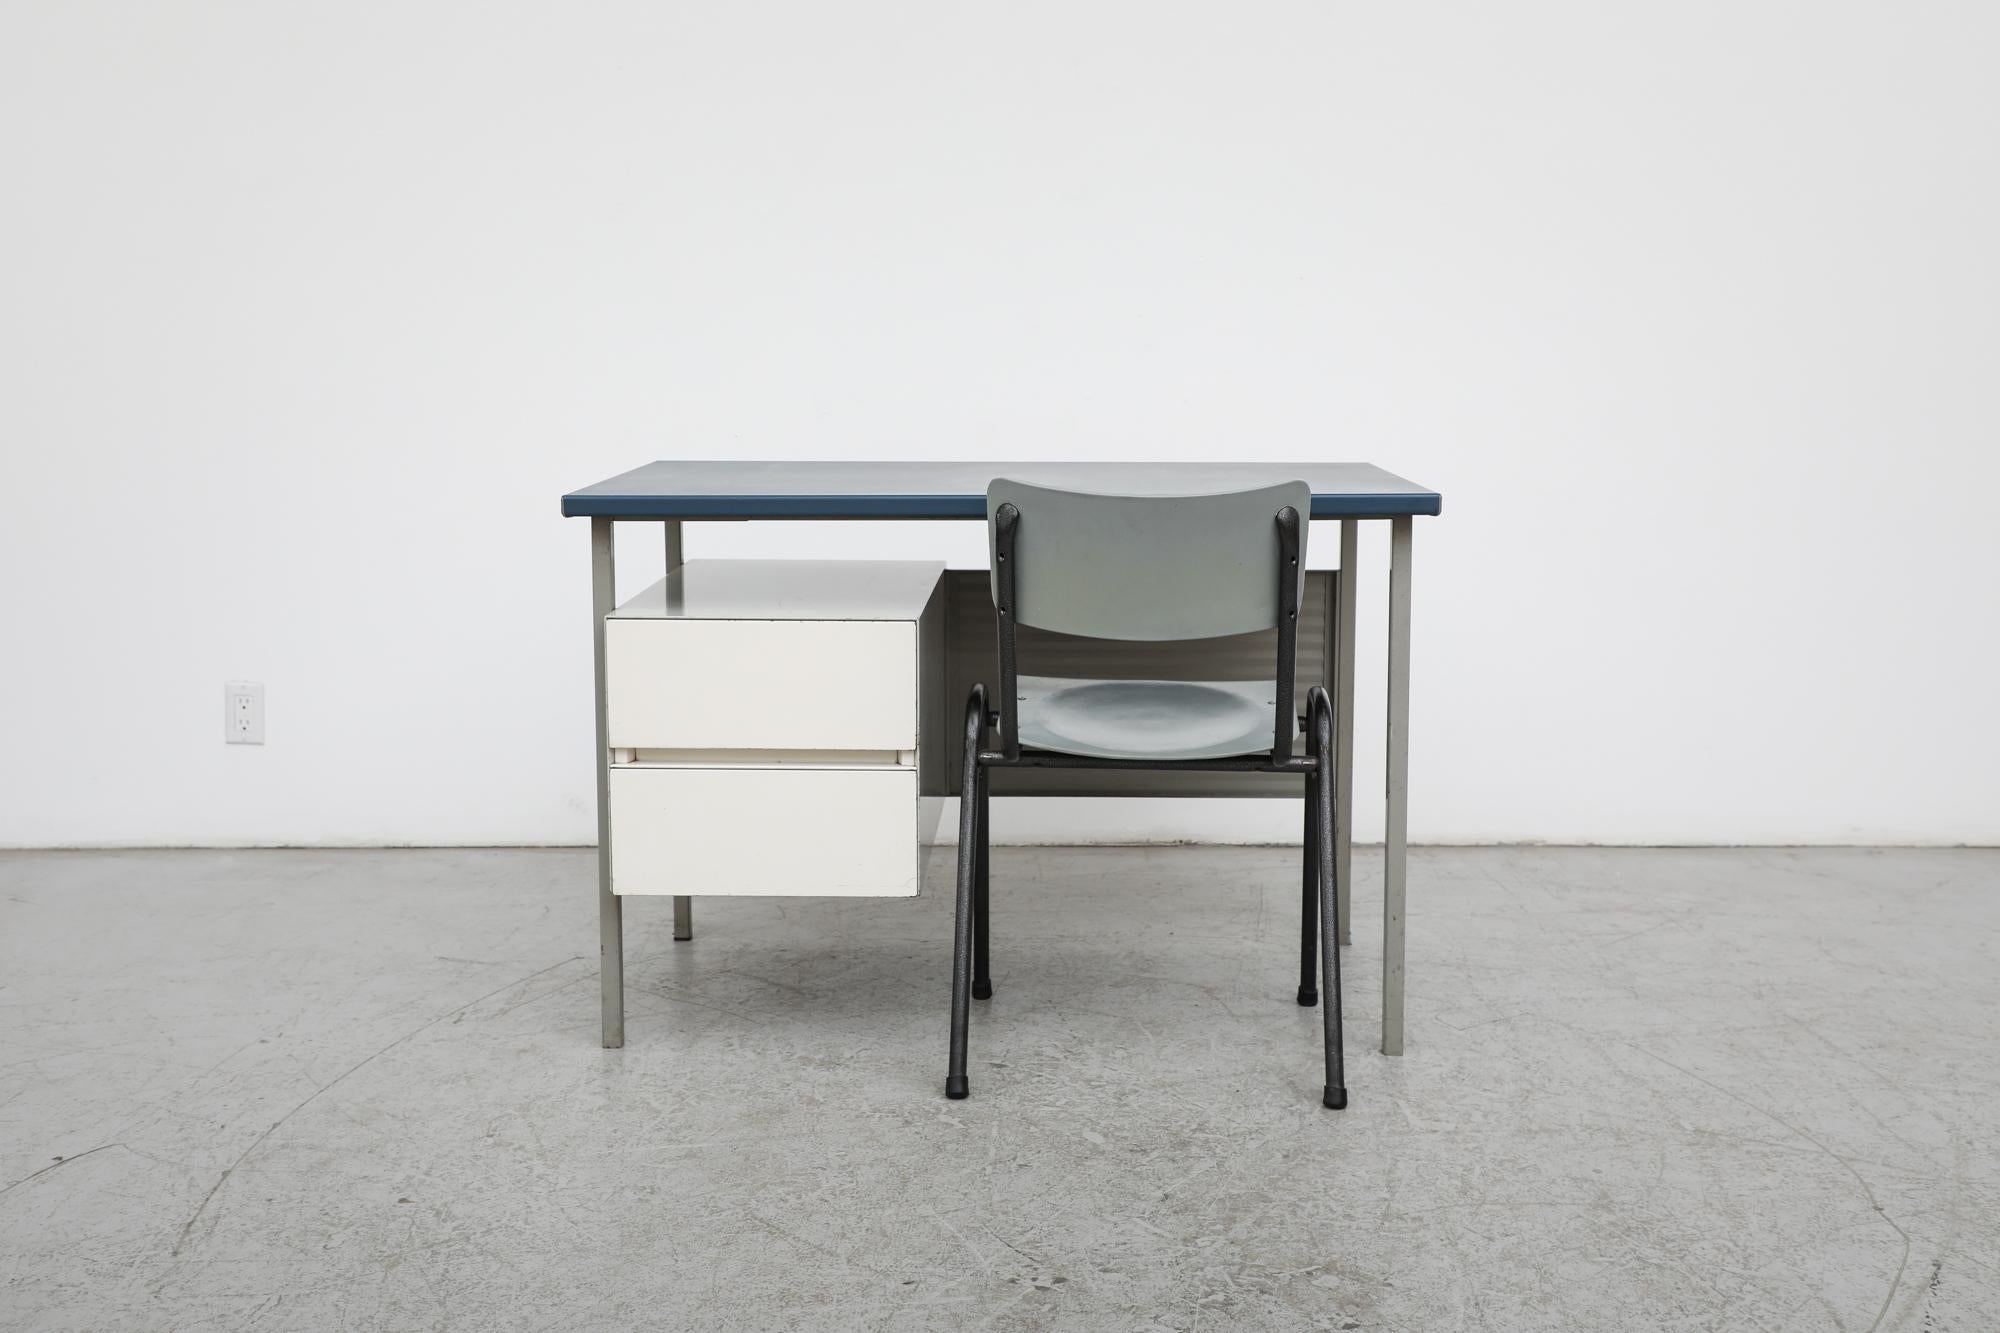 Bureau gris émaillé du milieu du siècle, conçu par le designer A. R Cordemeyer pour le célèbre fabricant néerlandais Gispen. Ce bureau des années 1960 comporte un meuble blanc à deux tiroirs, un pare-vue en métal et un plateau en linoléum bleu. En